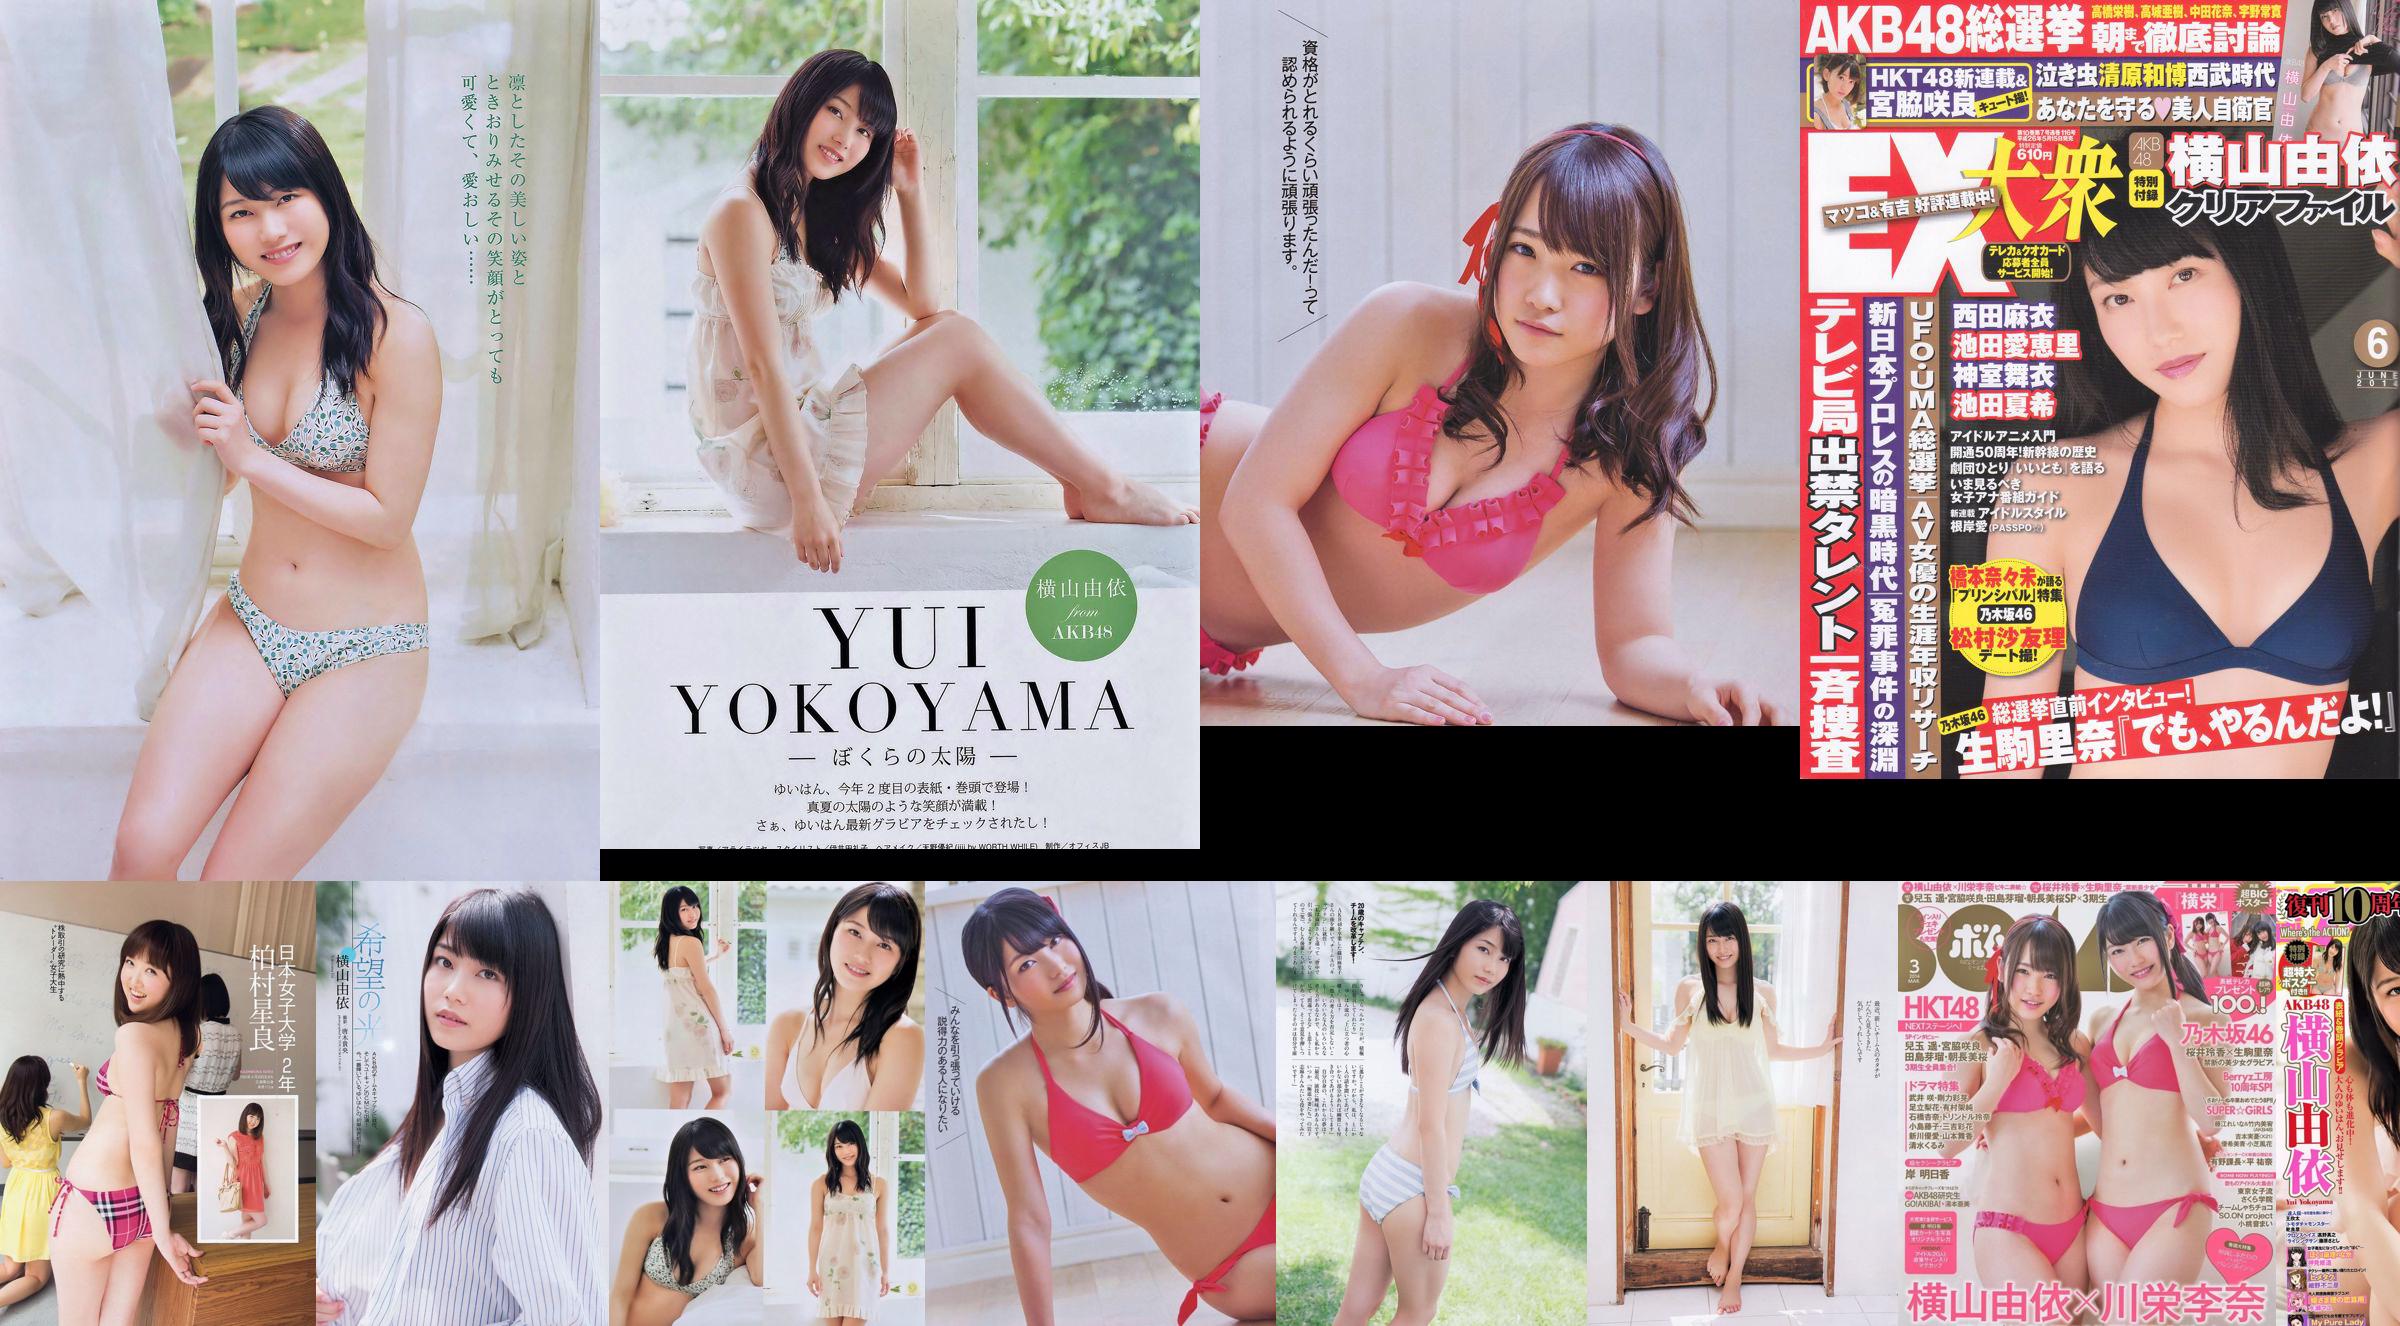 Yui Yokoyama Nozomi Sasaki Rina Koike Asuka Kuramochi Miwako Kakei Risa Yoshiki Ruri Shinato [Weekly Playboy] 2013 No.38 Foto No.182074 Halaman 3